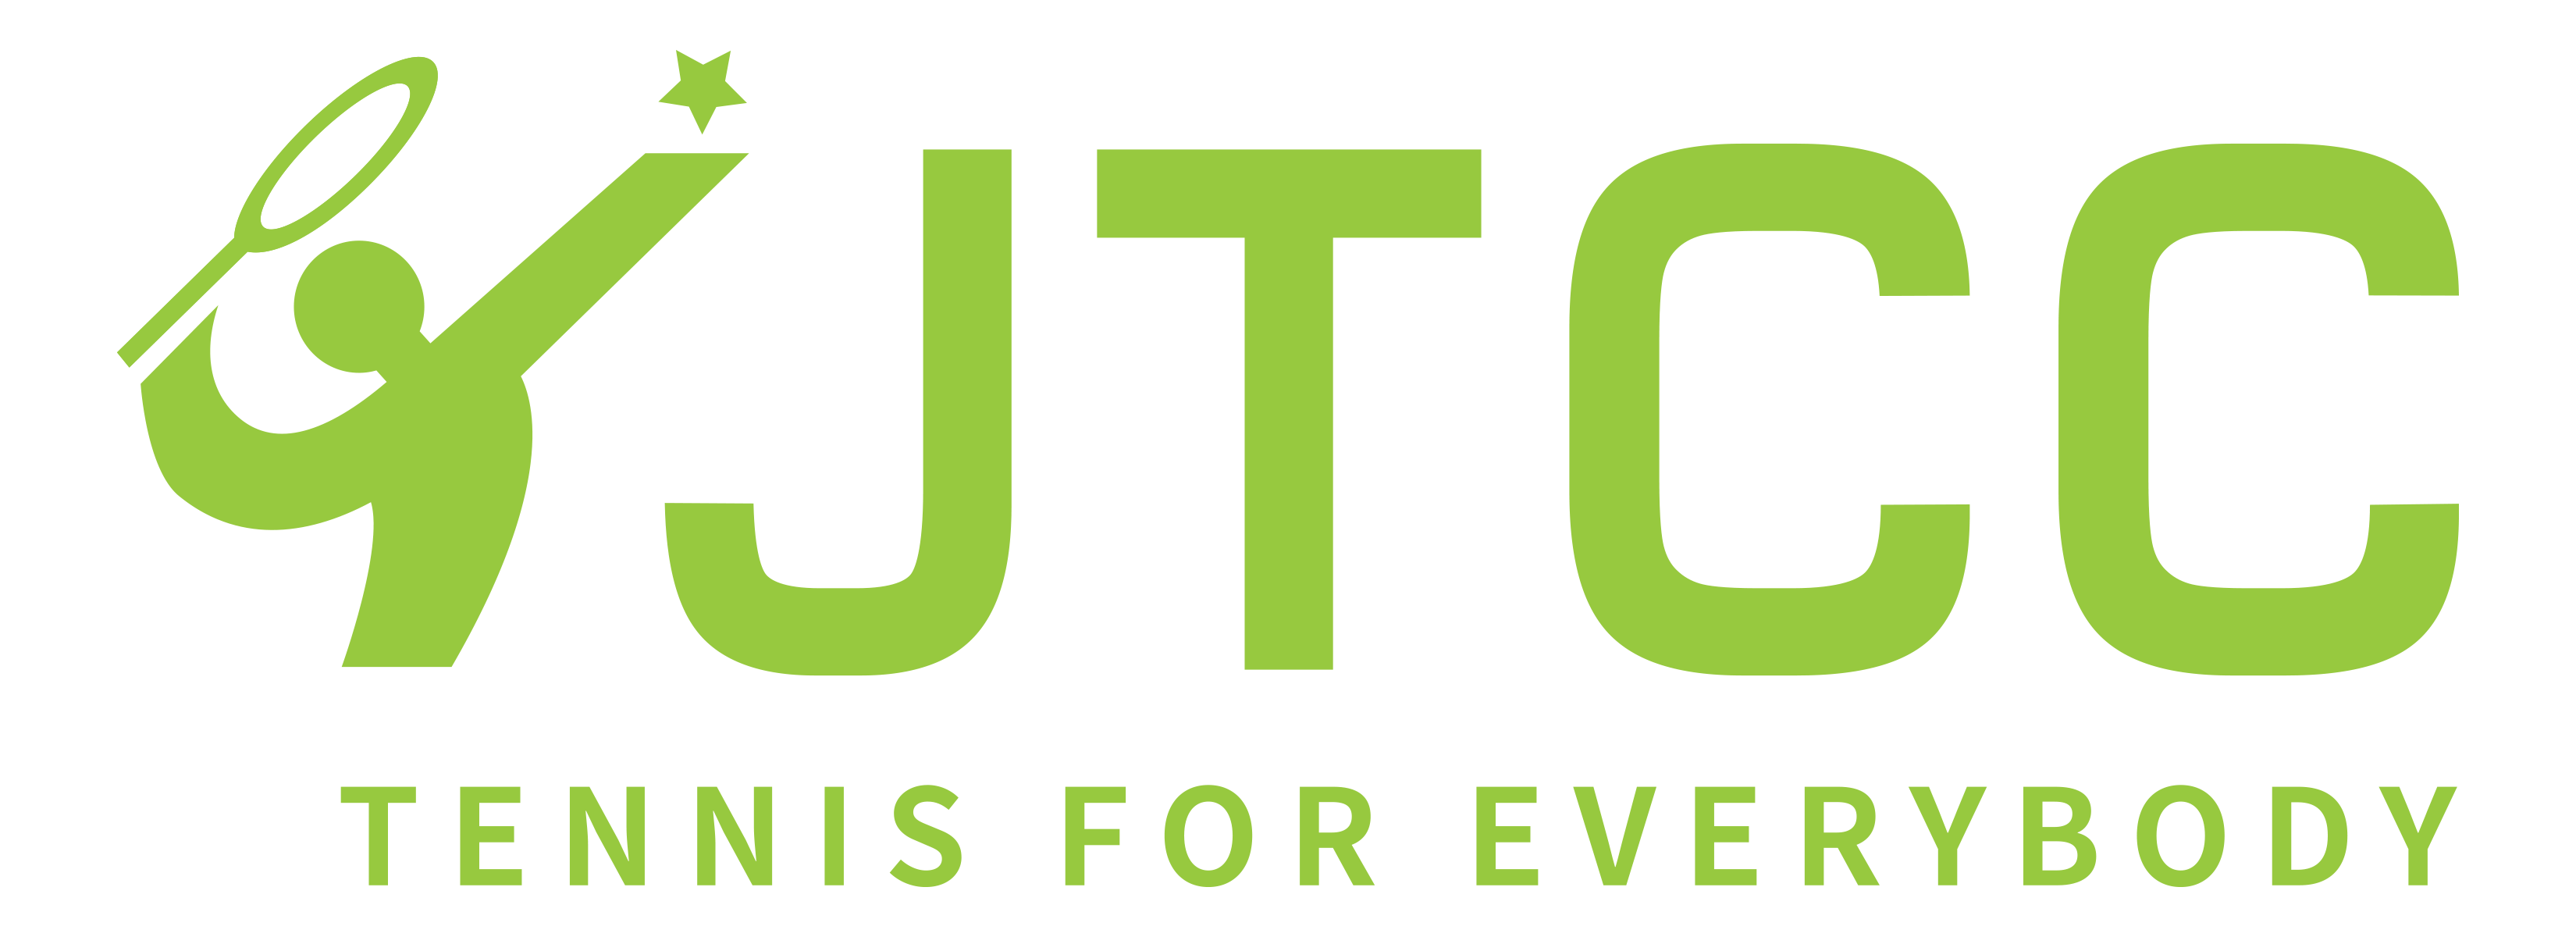 jtcc-logo